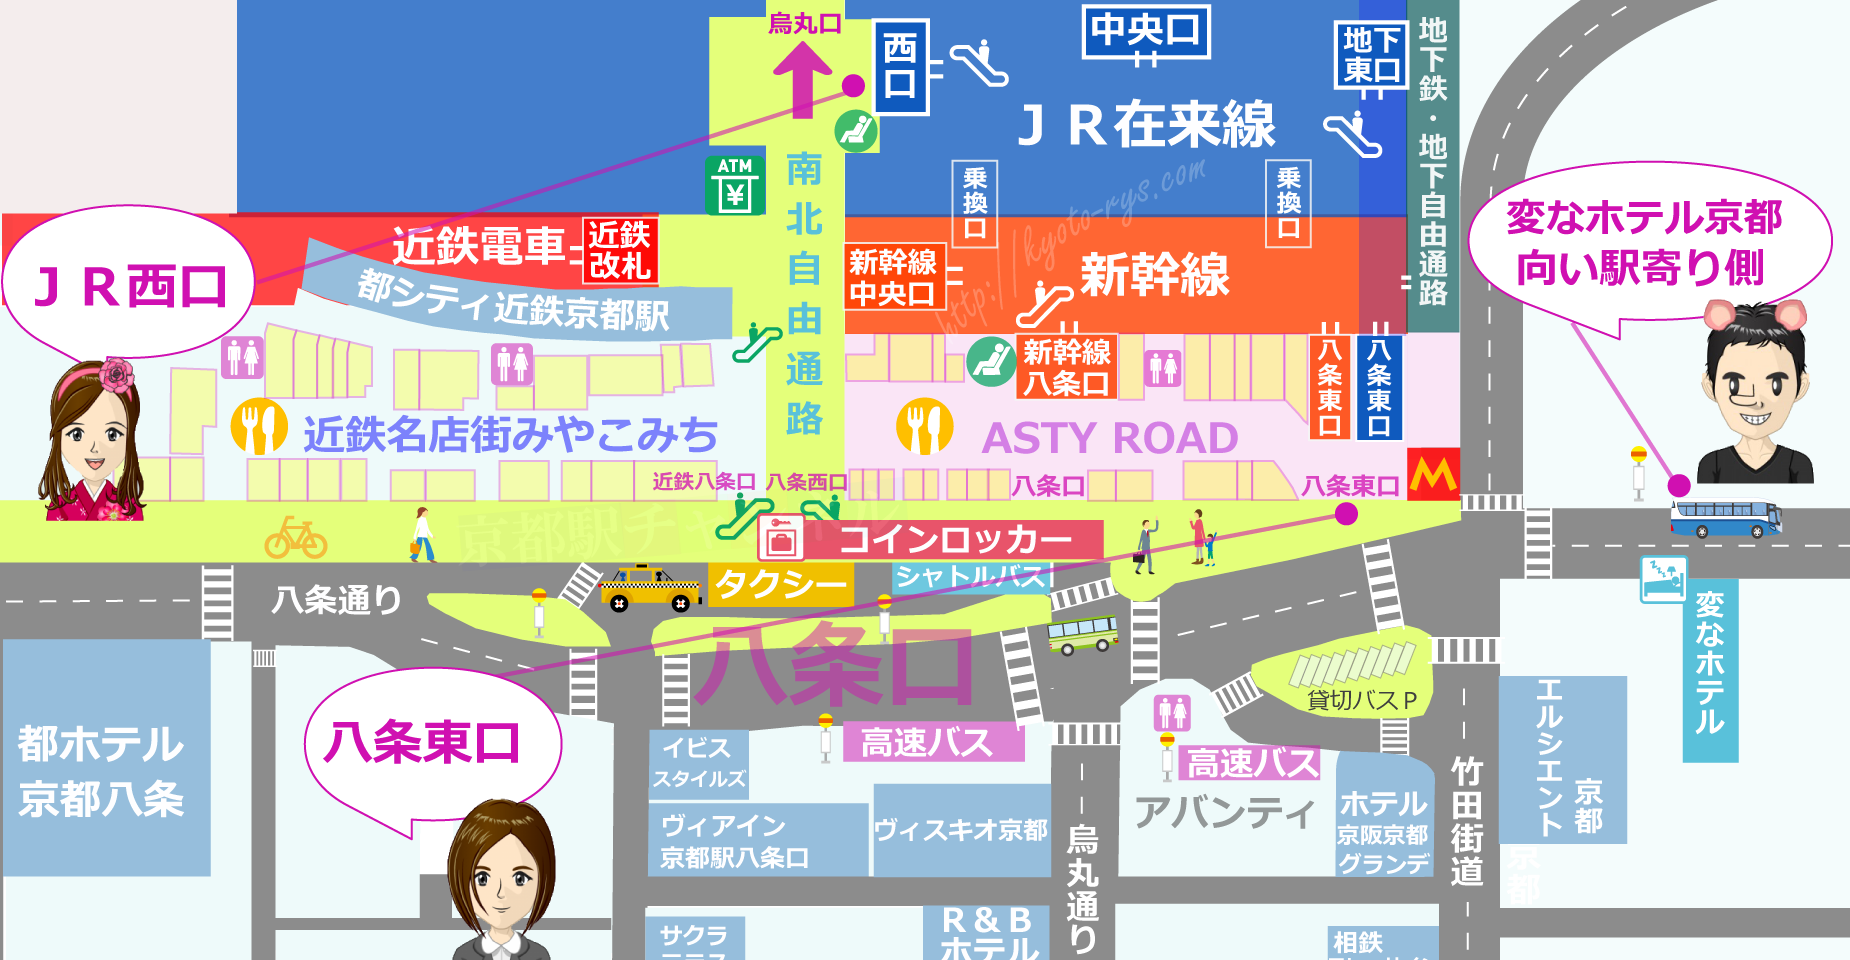 変なホテル京都向い駅寄り側の地図